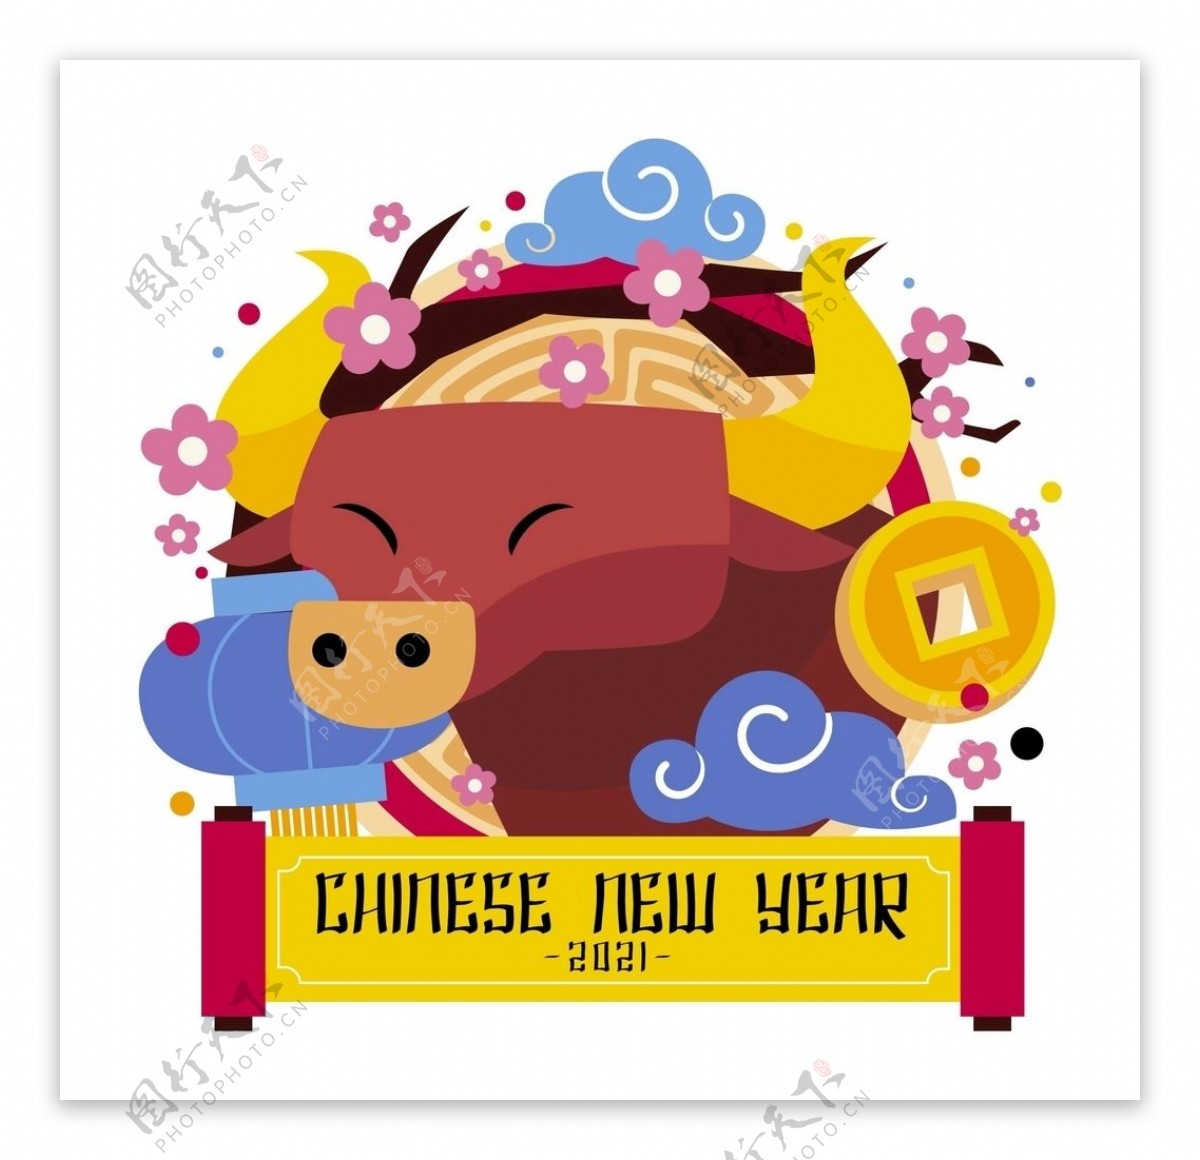 中国新年2021牛年插画素材图片